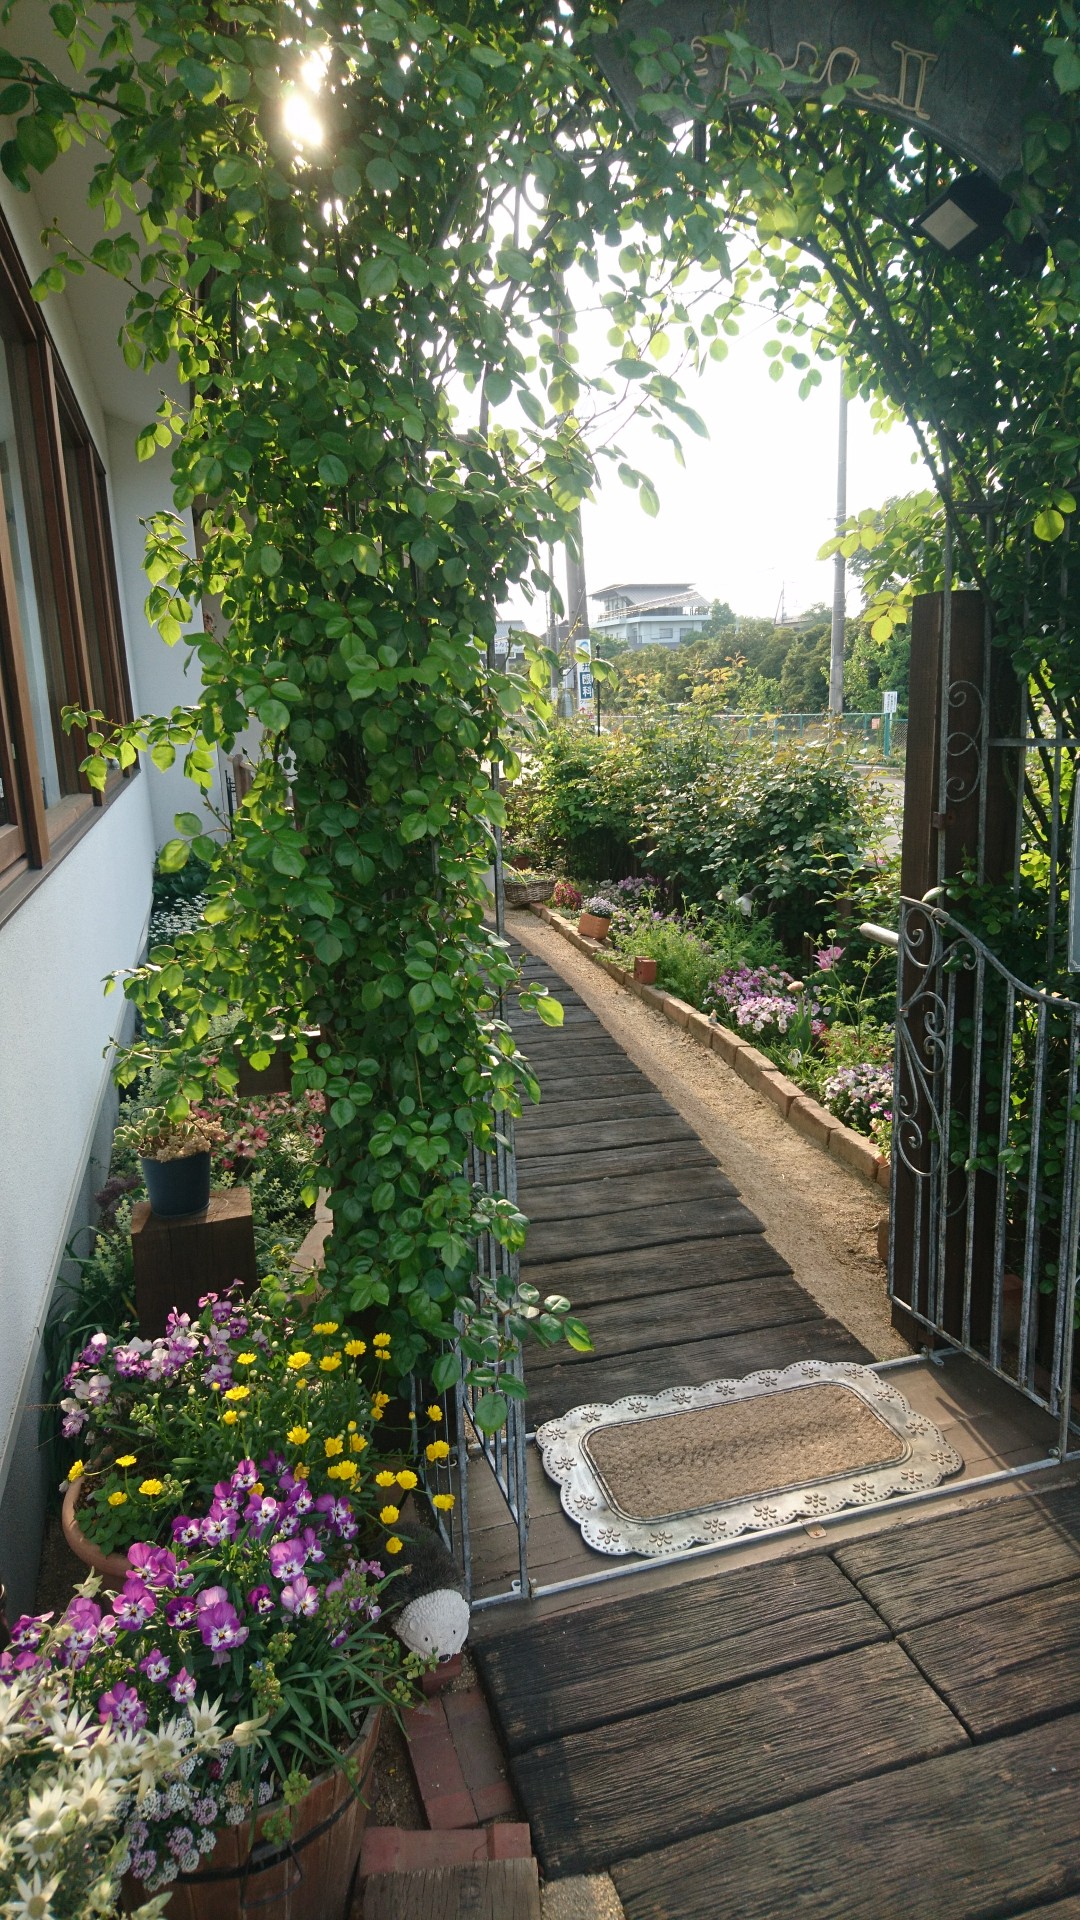 オープン ガーデン 埼玉県さいたま市見沼区のギャラリーカフェ エソラ 個展開催 安らぎの喫茶店